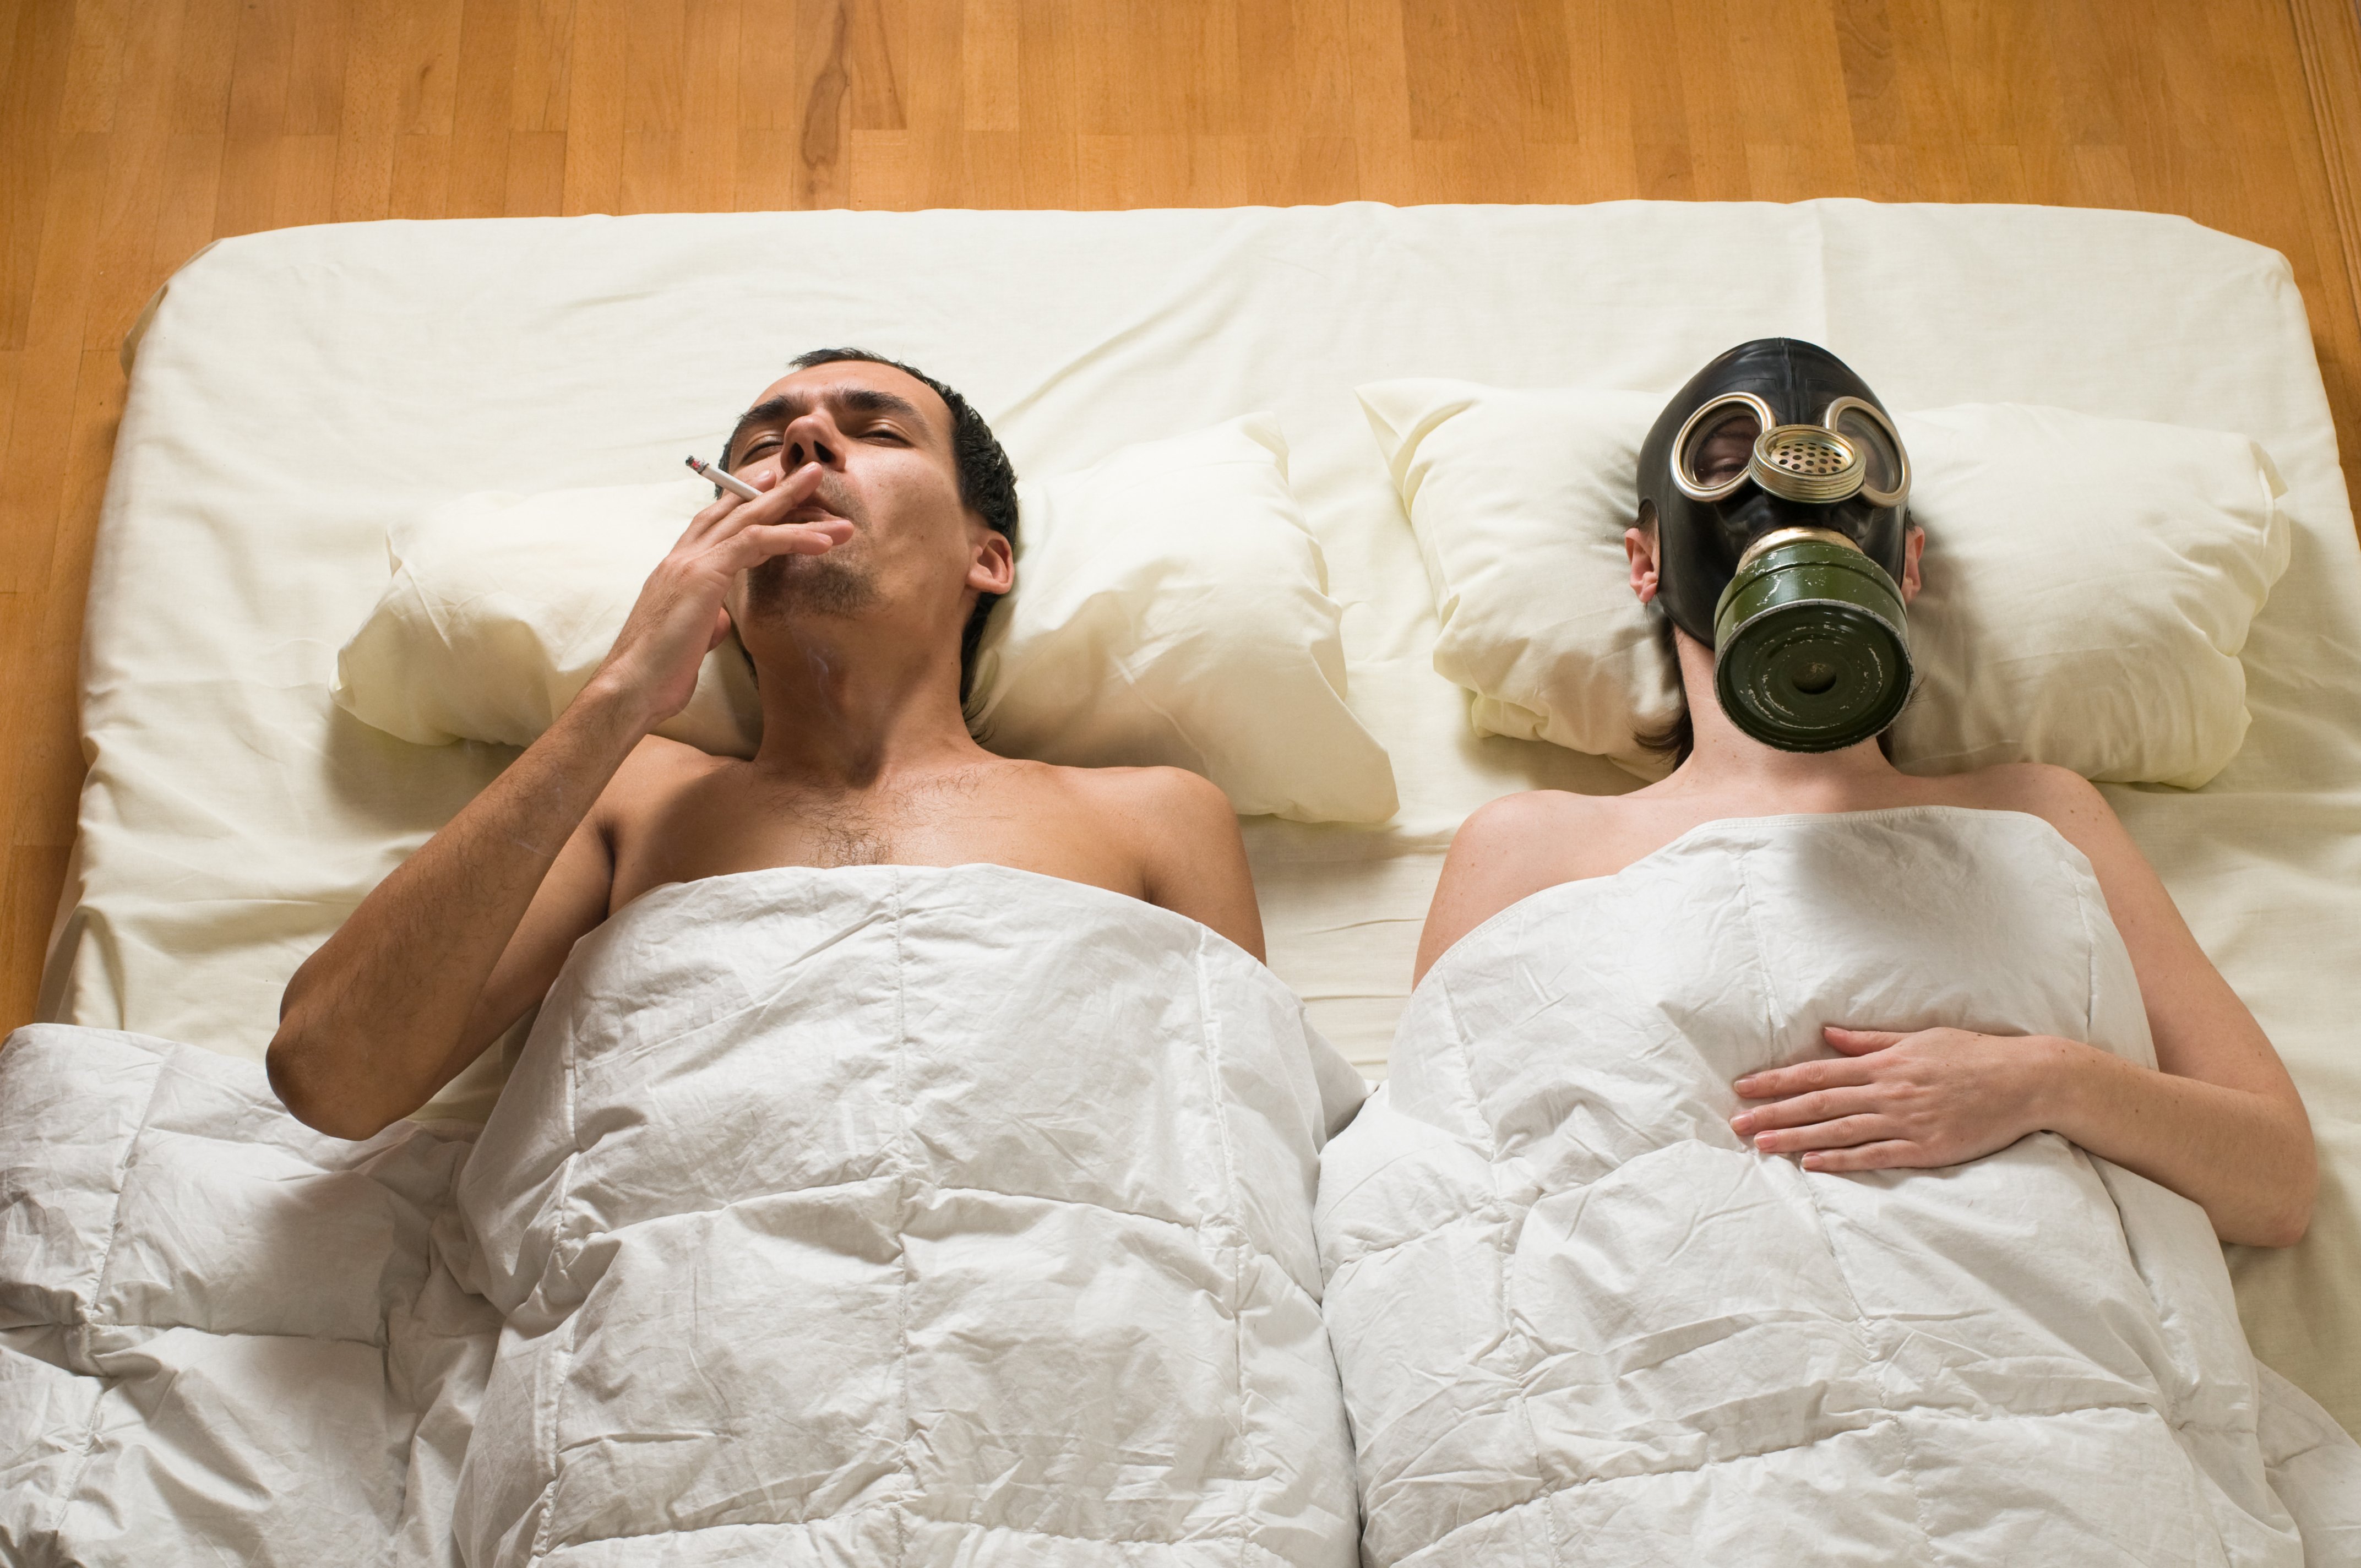 В постели с опасностью. Мужчины курят в постели. Сон в противогазе. Смешная фотосессия в кровати. Мужчина и женщина в противогазах.